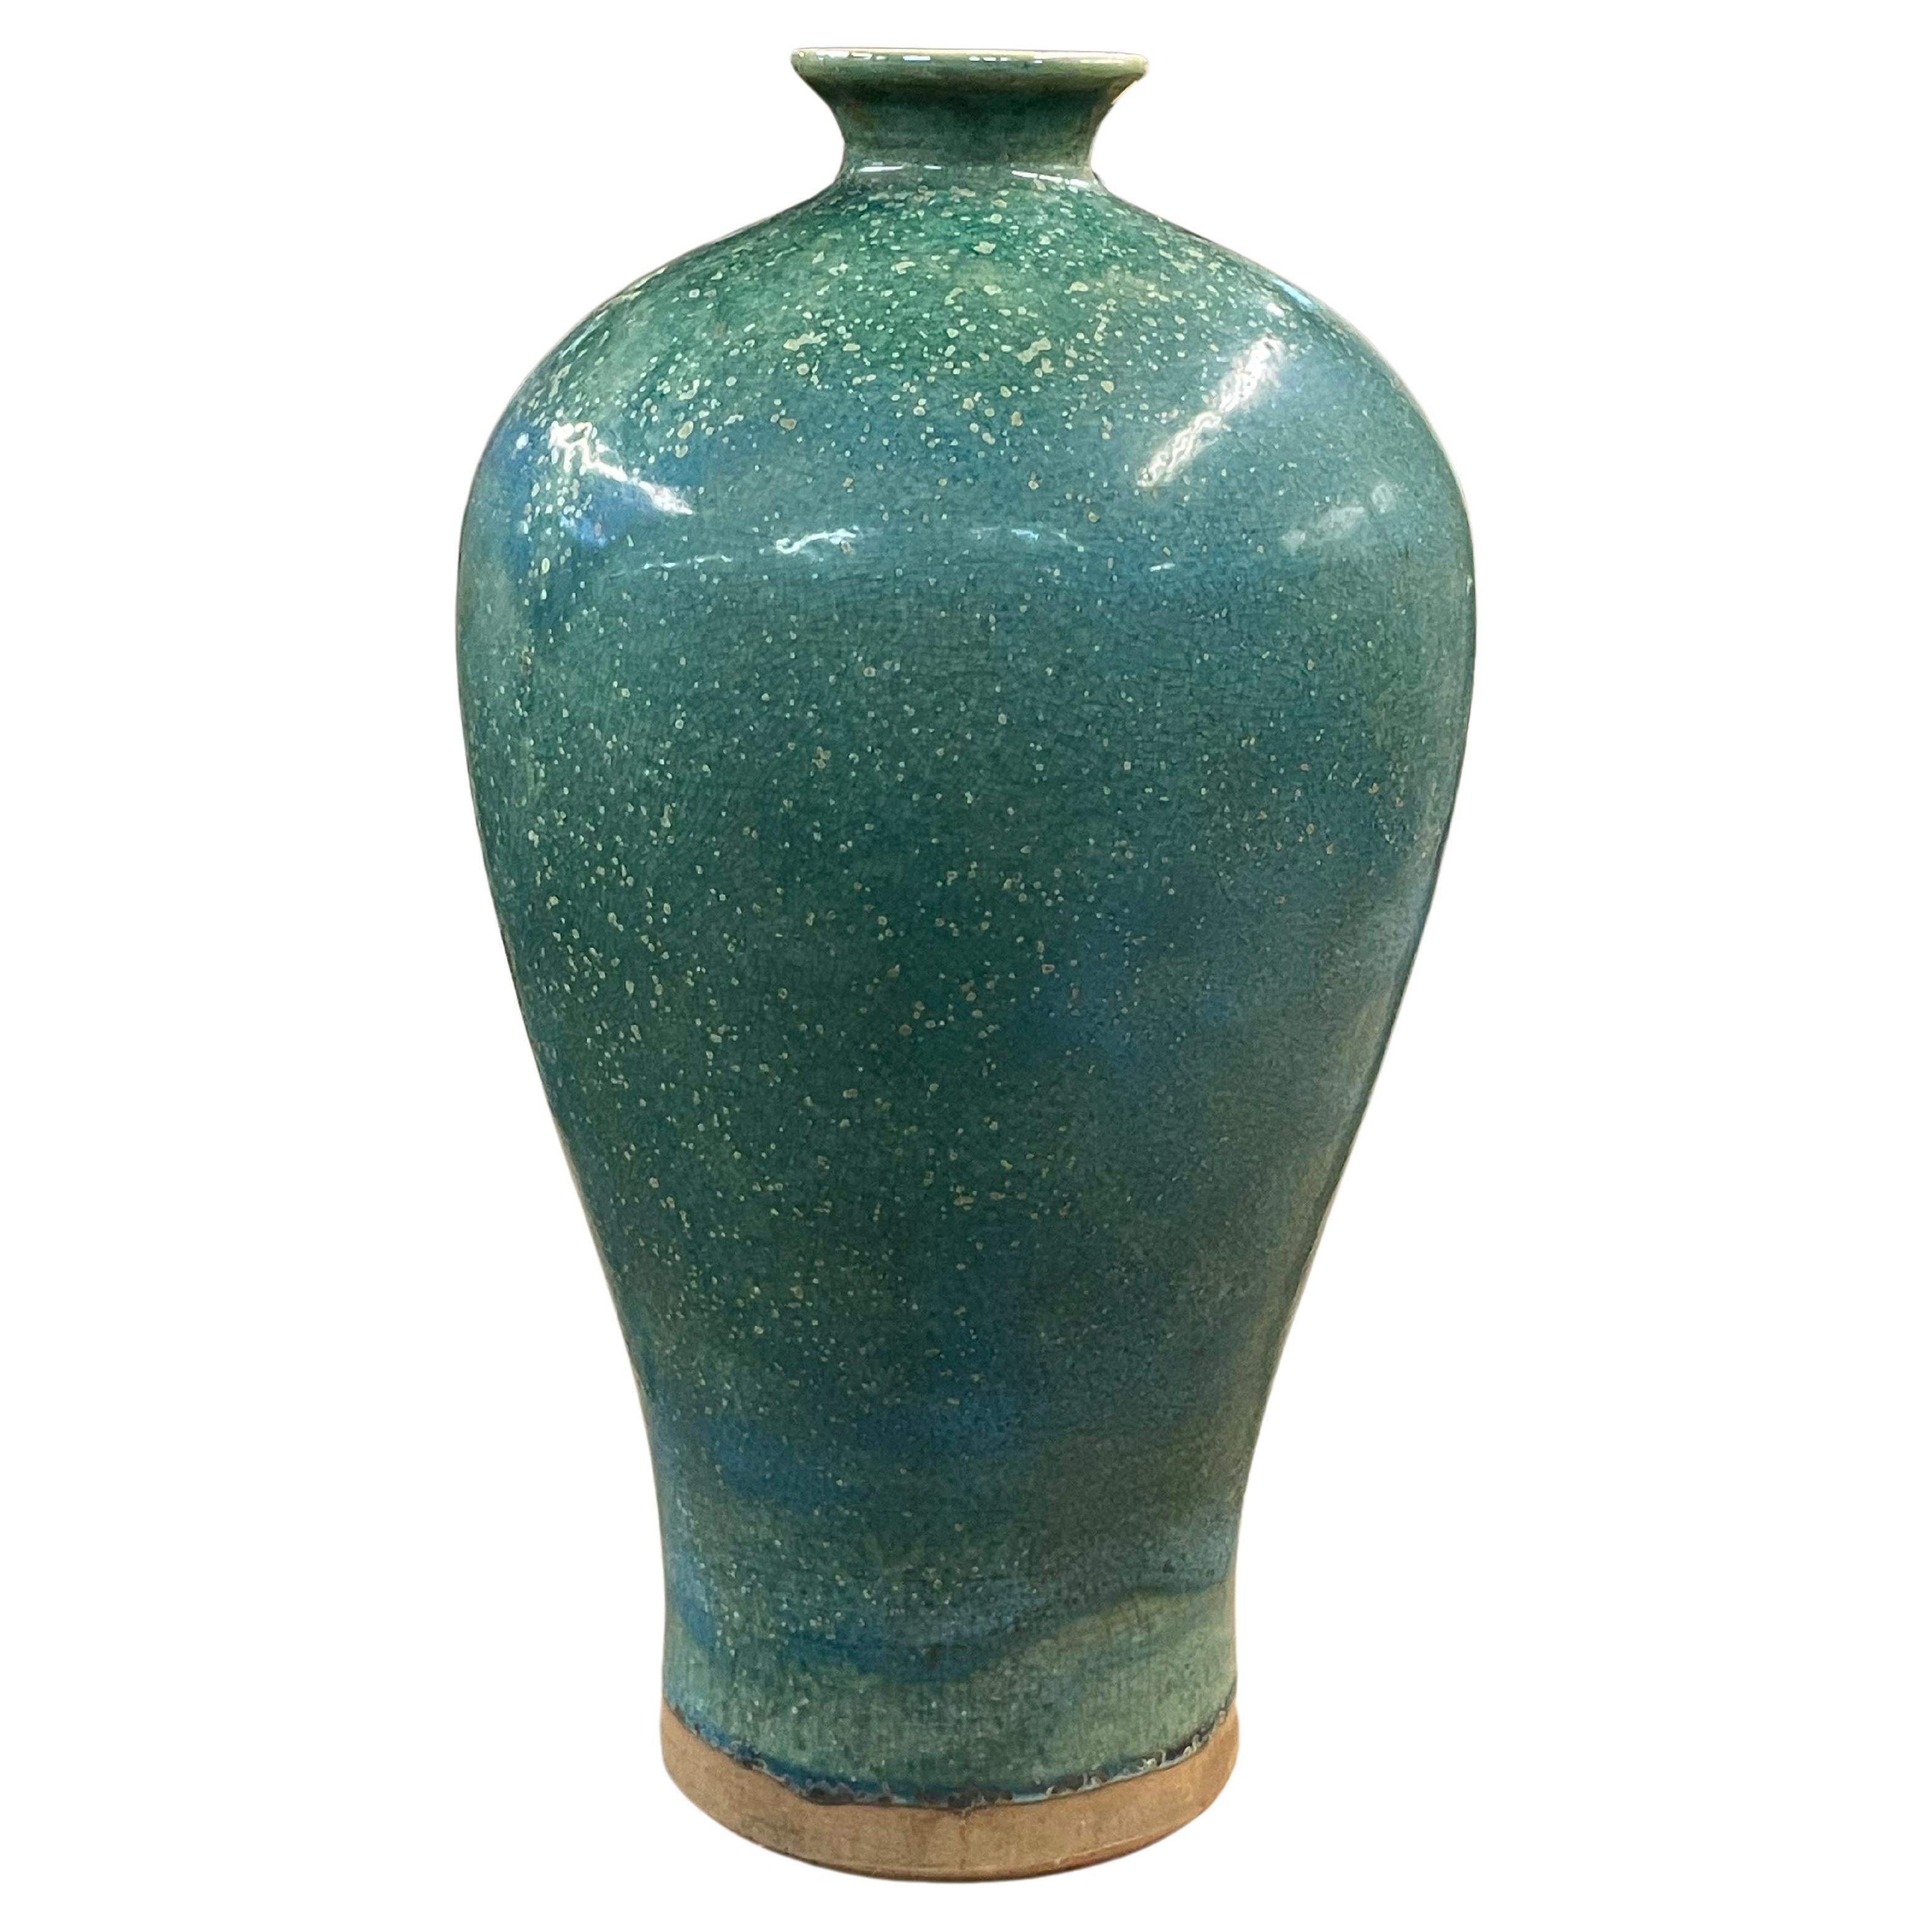 Vase mit türkis gesprenkelter Glasur, China, Contemporary